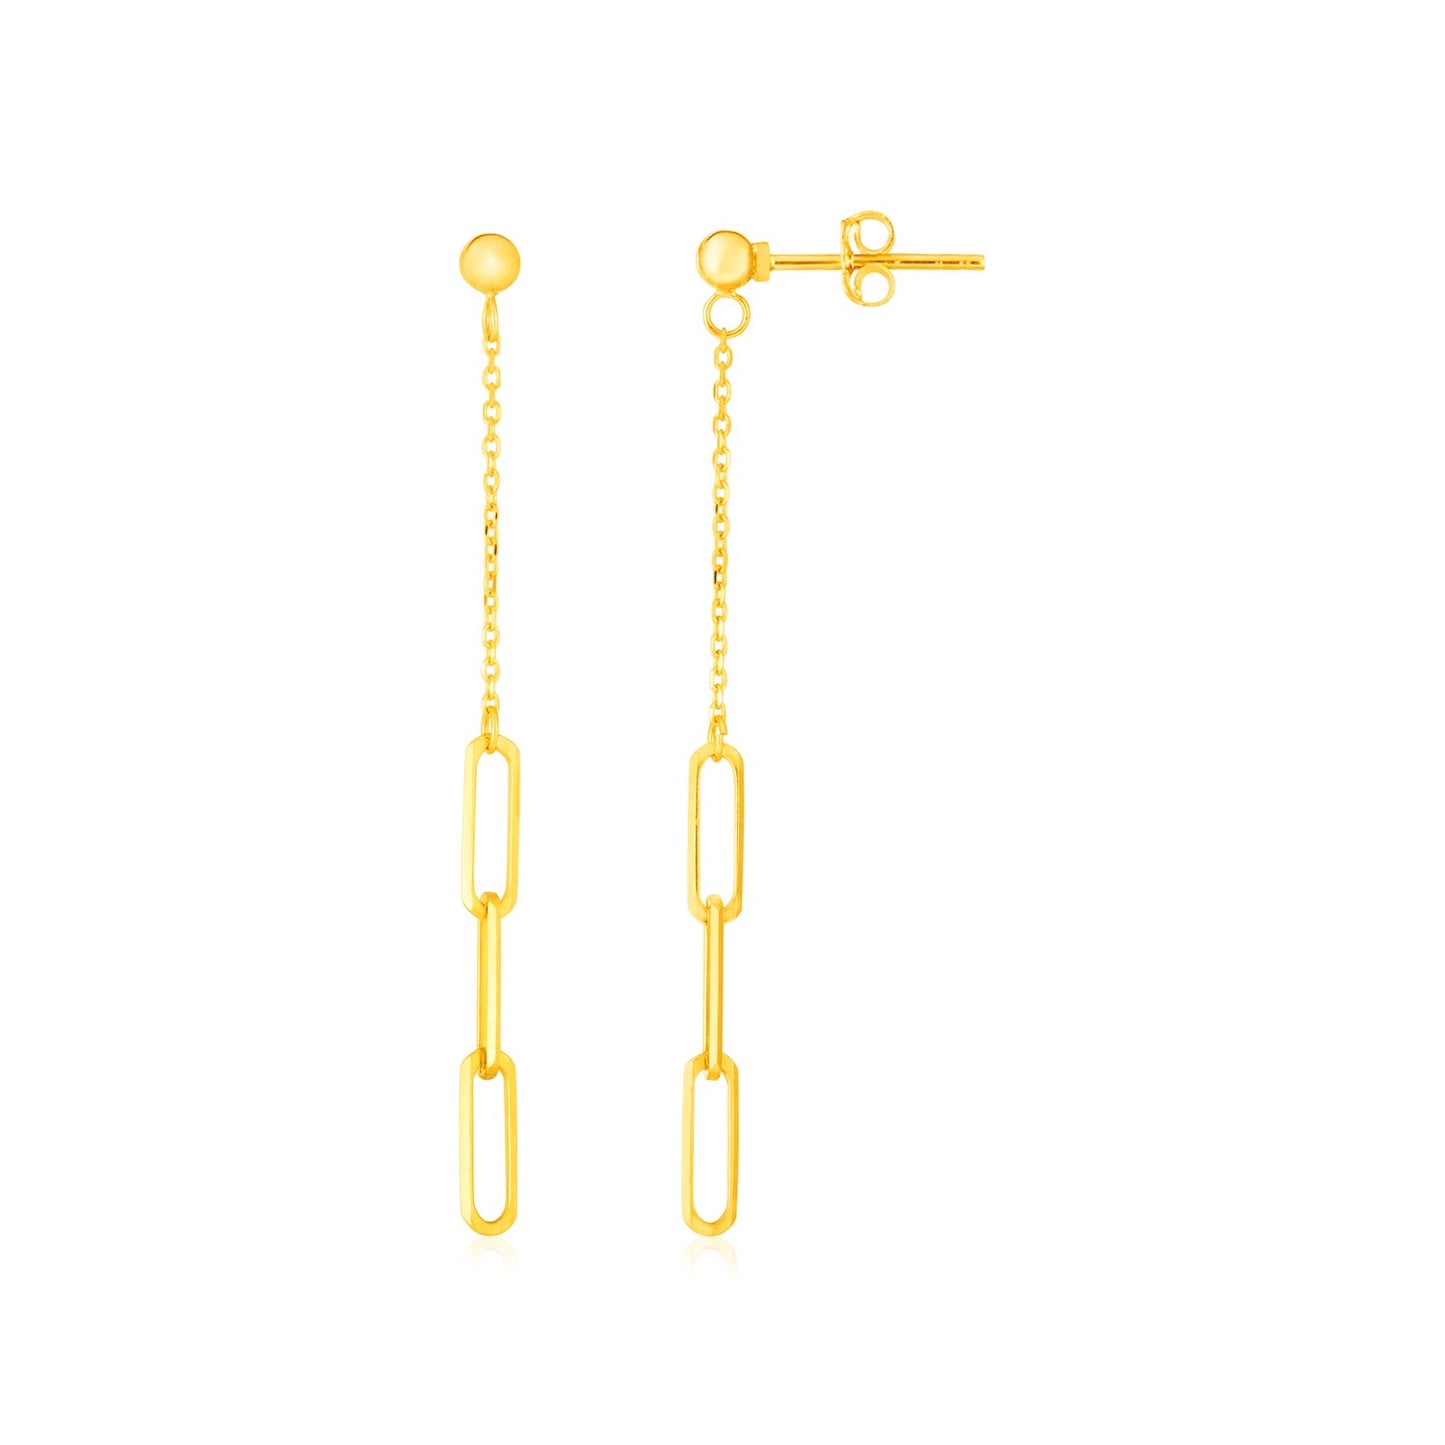 Paperclip & Fine Link Earrings in 14K Yellow Gold